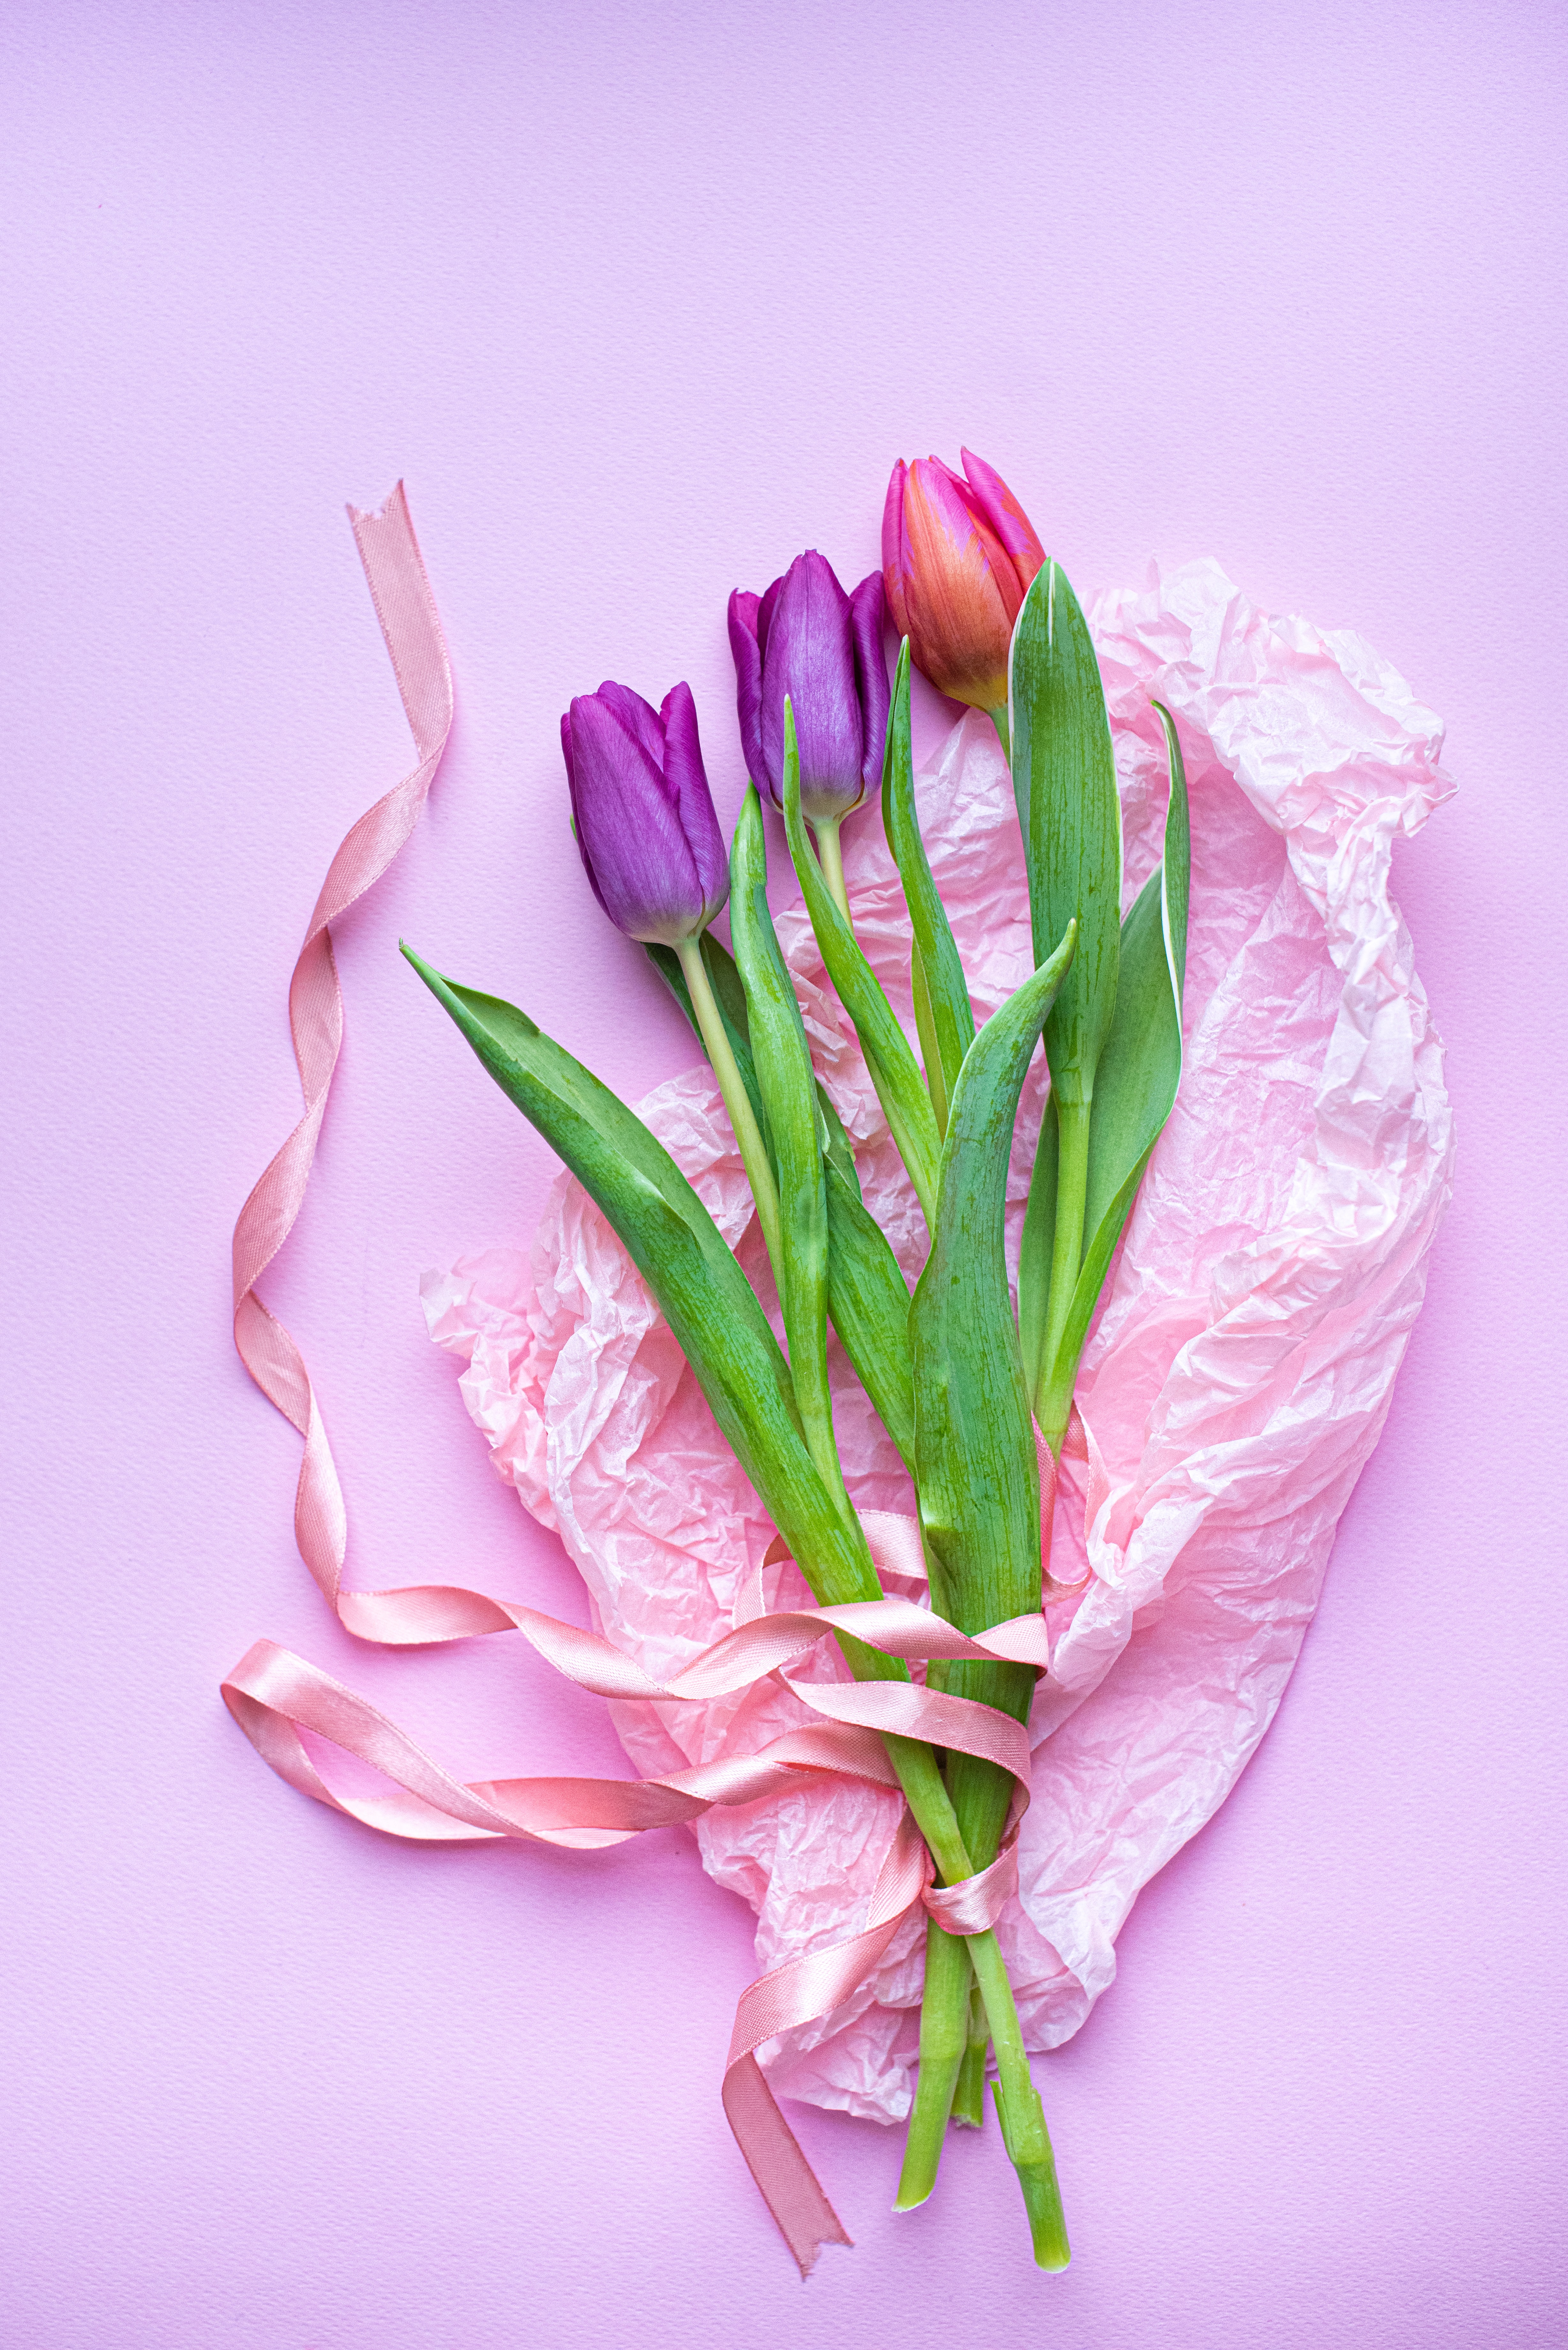 Скачать обои бесплатно Цветы, Розовый, Фиолетовый, Букет, Тюльпаны картинка на рабочий стол ПК